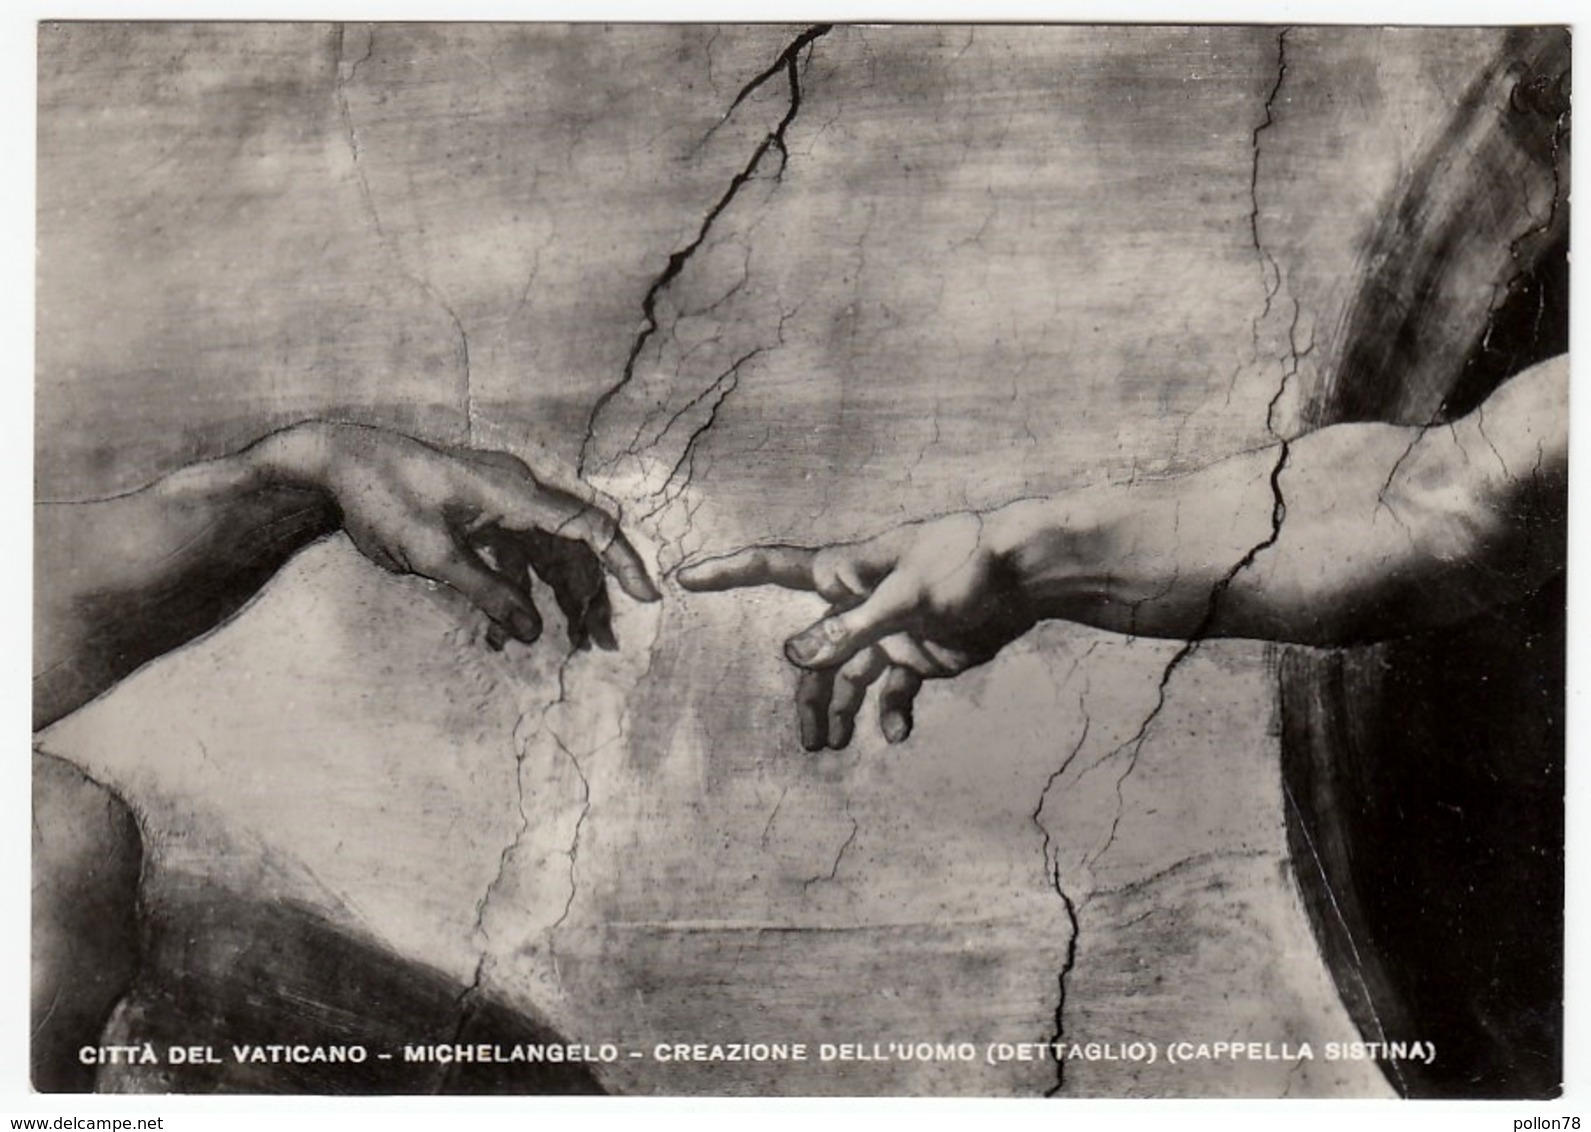 CITTA' DEL VATICANO - MICHELANGELO - CREAZIONE DELL'UOMO (DETTAGLIO) (CAPPELLA SISTINA) - 12966 - Pittura & Quadri